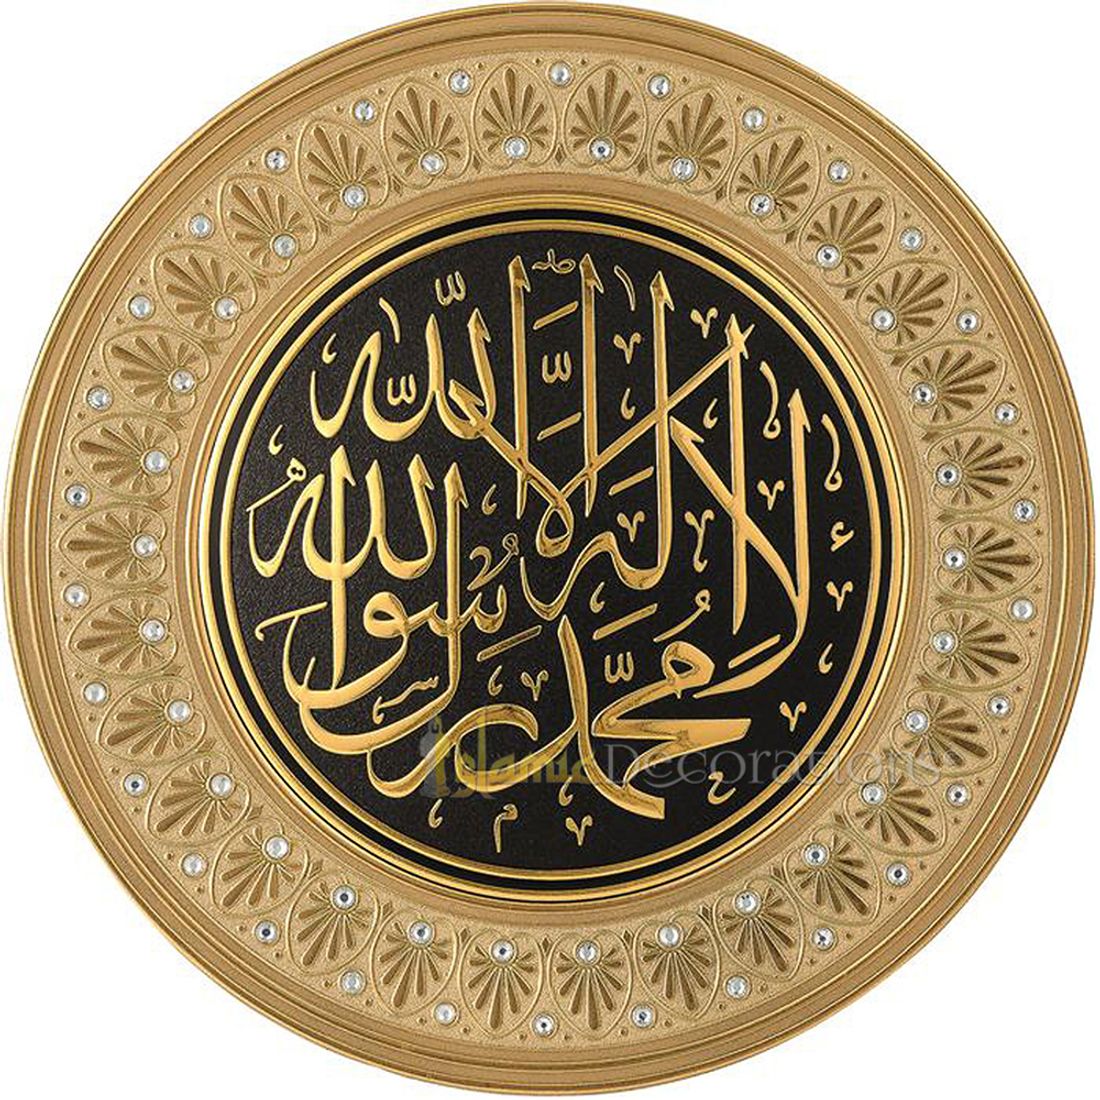 Cetakan Bulat Emas 16-1/2 di La ilaha illallah Piring Pajangan Bertabur Permata Muhammad Rasulullah – Seni Kaligrafi Islam